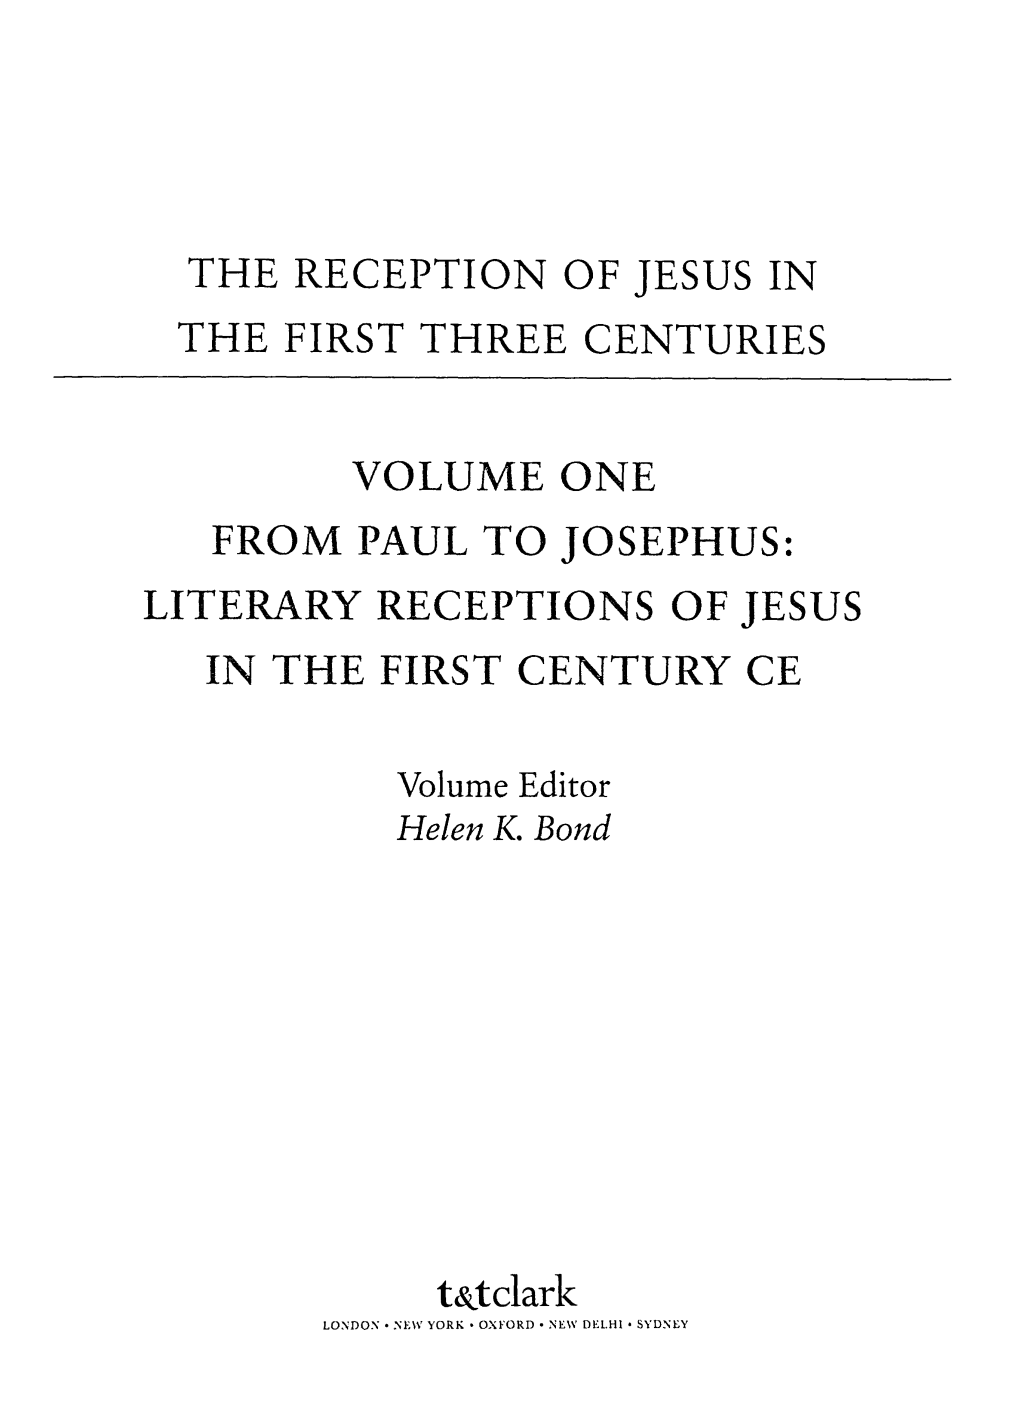 From Paul to Josephus: Literary Receptions of Jesus